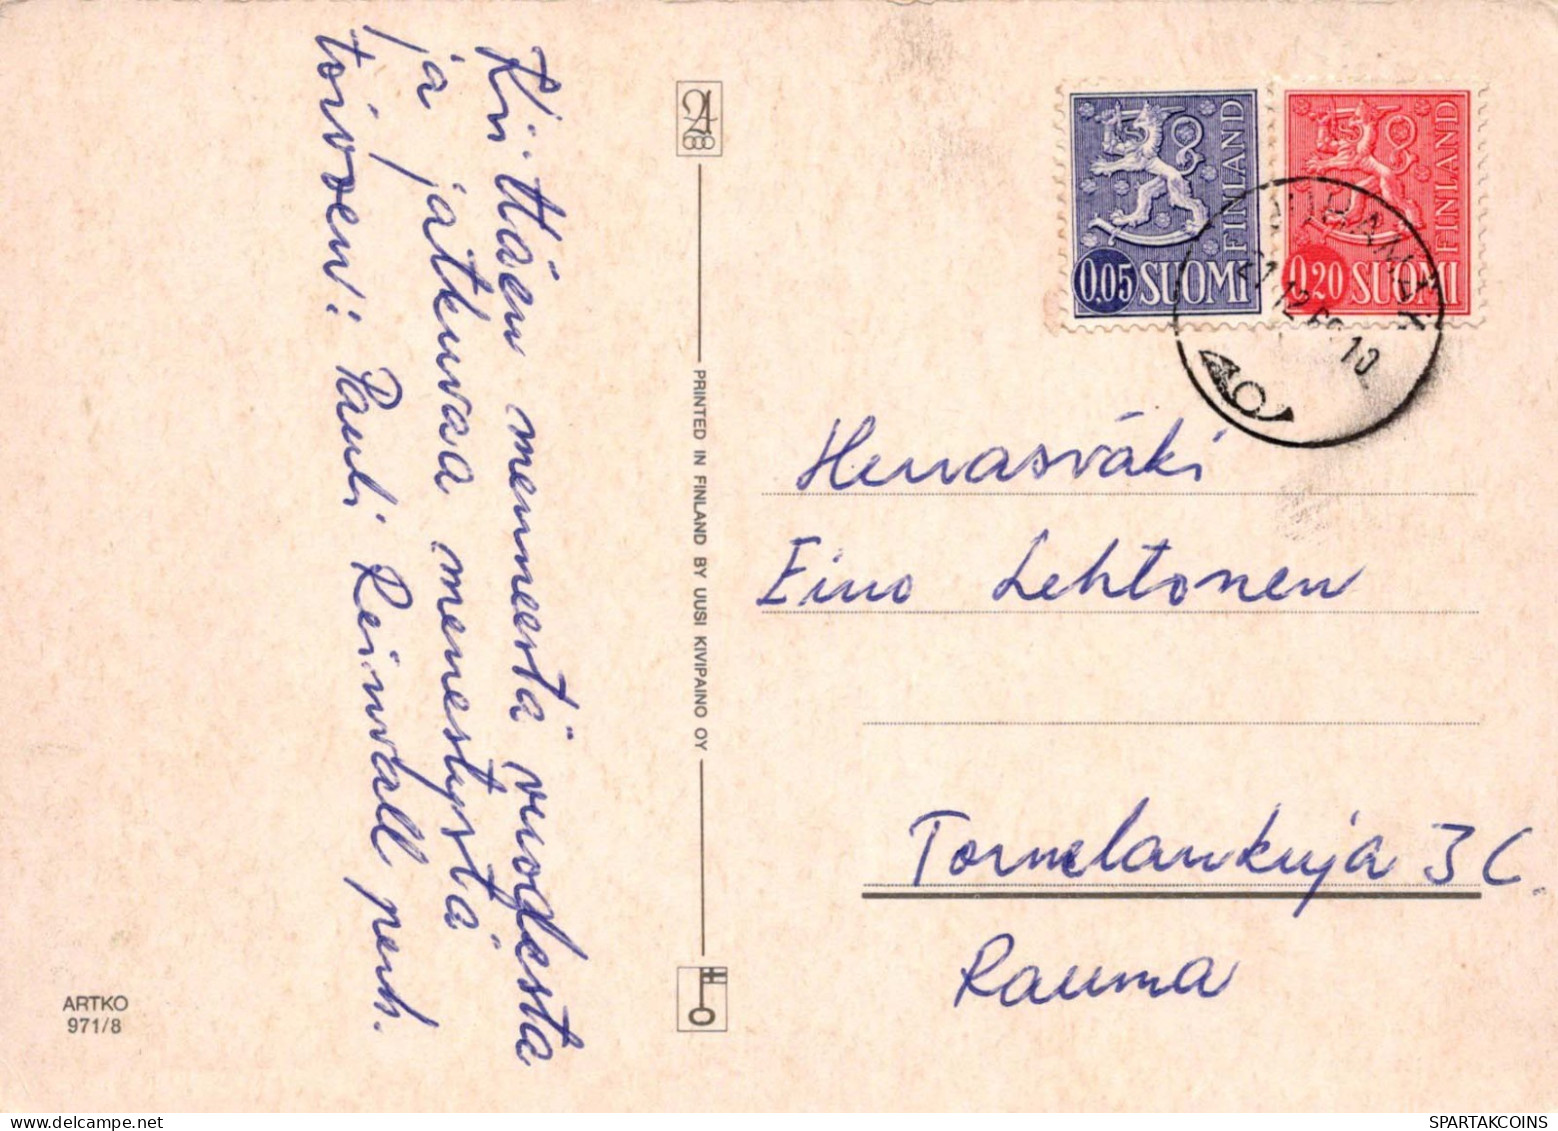 Feliz Año Navidad VELA Vintage Tarjeta Postal CPSM #PAZ307.ES - Año Nuevo